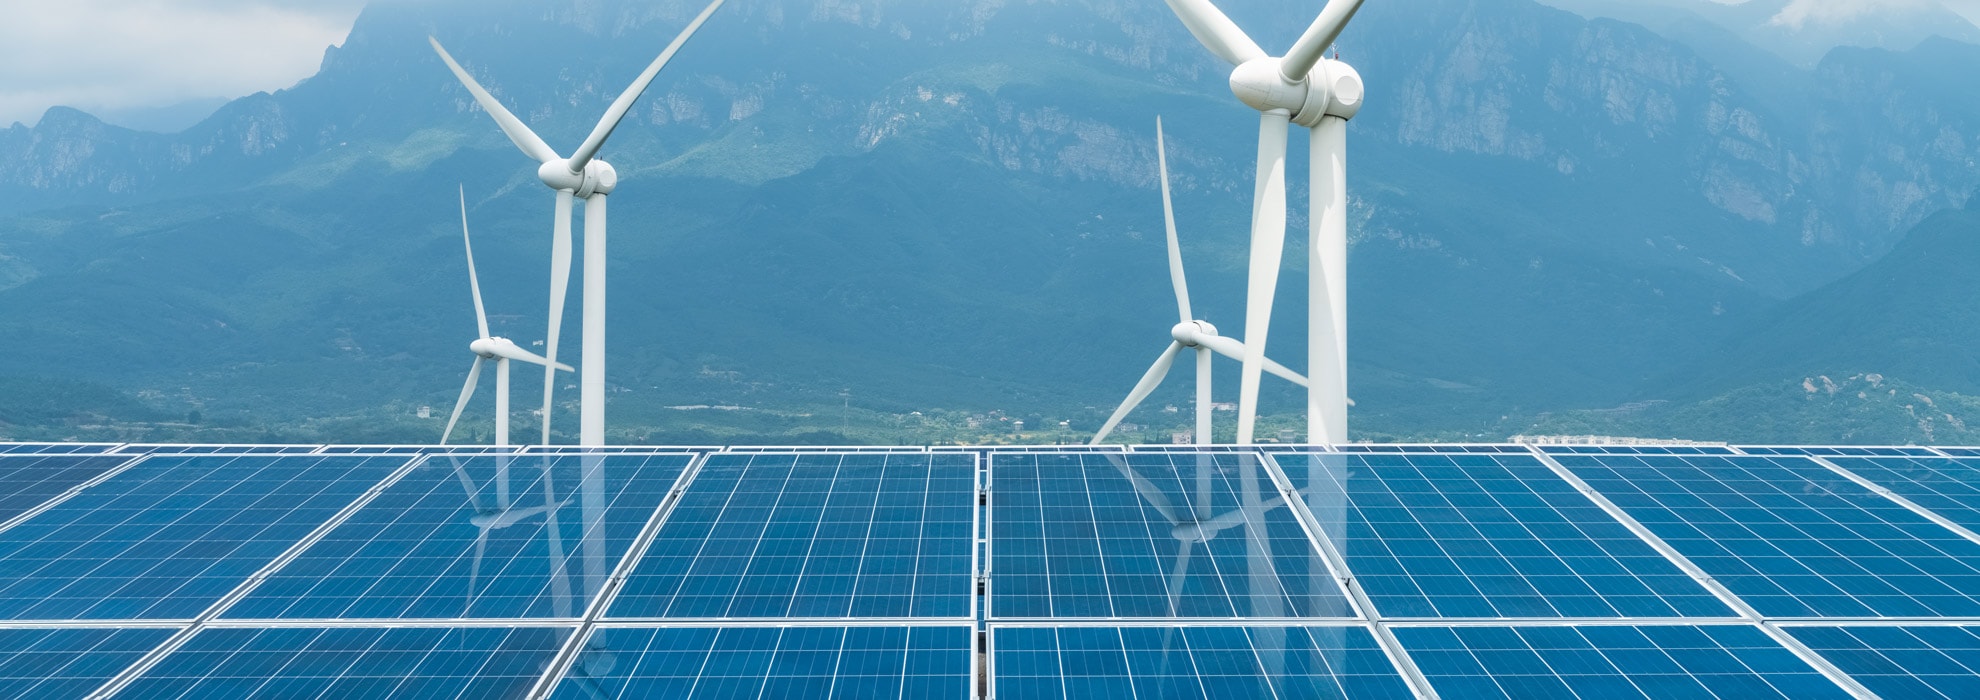 energy supply alternatives wind turbines